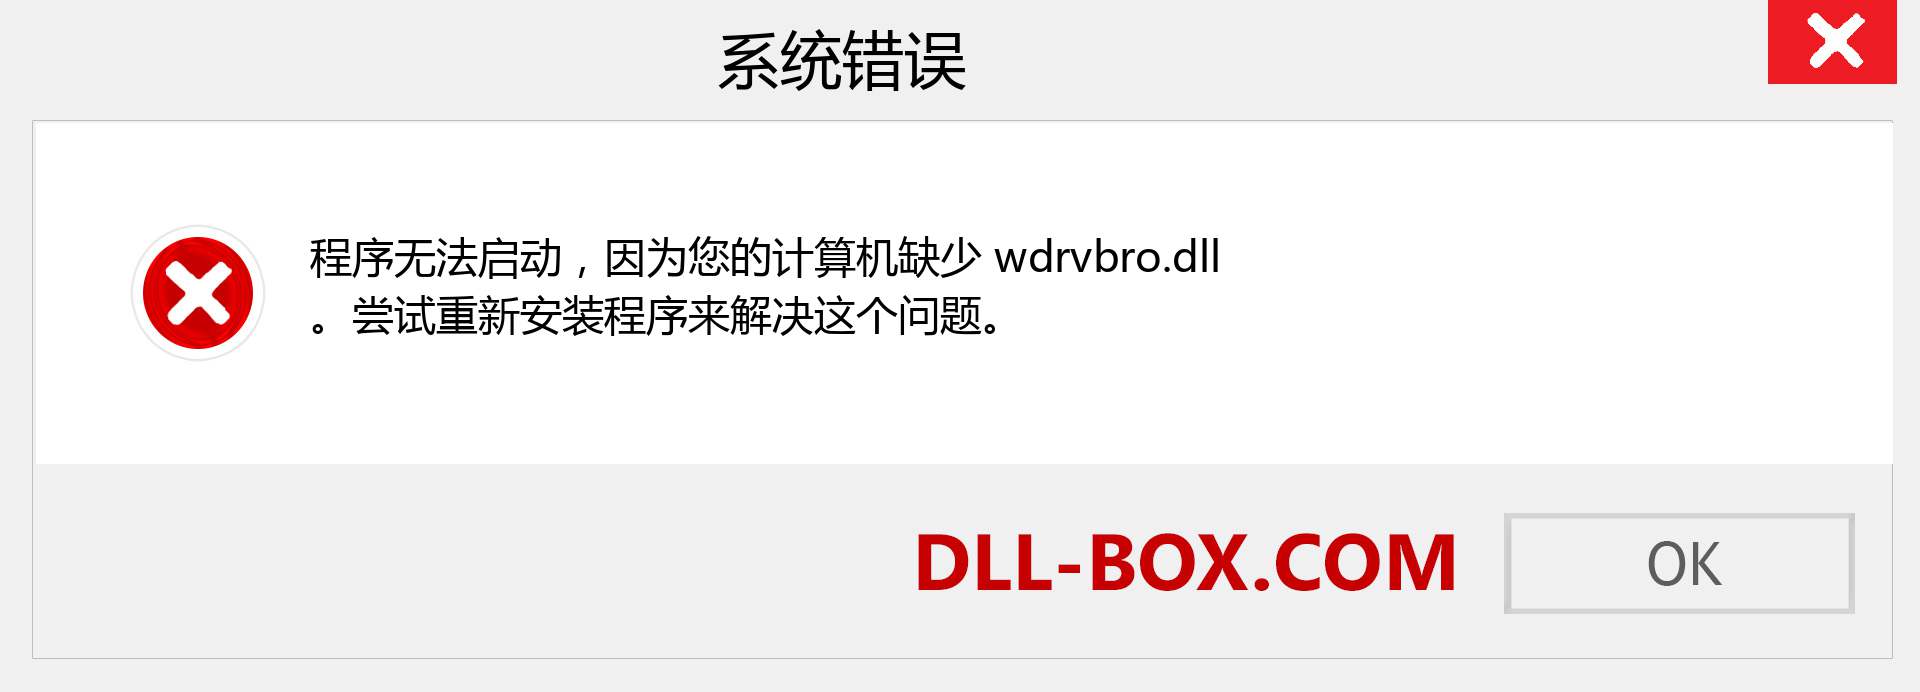 wdrvbro.dll 文件丢失？。 适用于 Windows 7、8、10 的下载 - 修复 Windows、照片、图像上的 wdrvbro dll 丢失错误